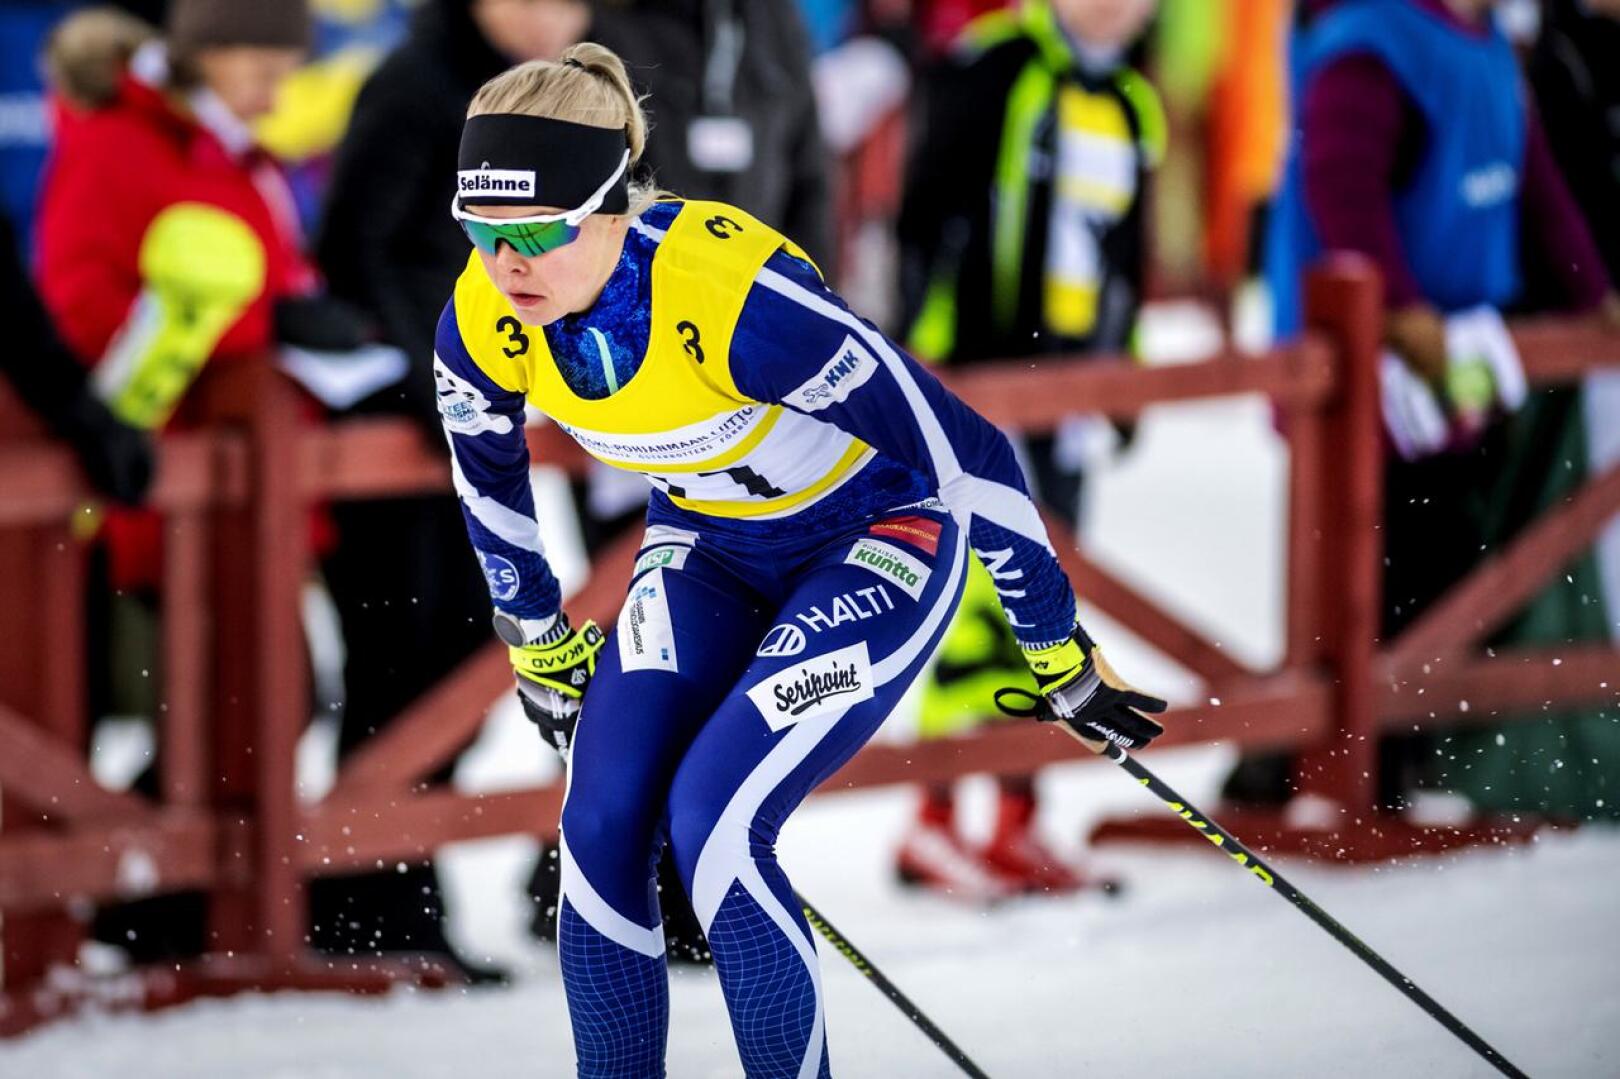 Kainuun Hiihtoseuran reisjärvinen Anni Alakoski hiihtää Lahden maailmancupissa kansallisessa ryhmässä.